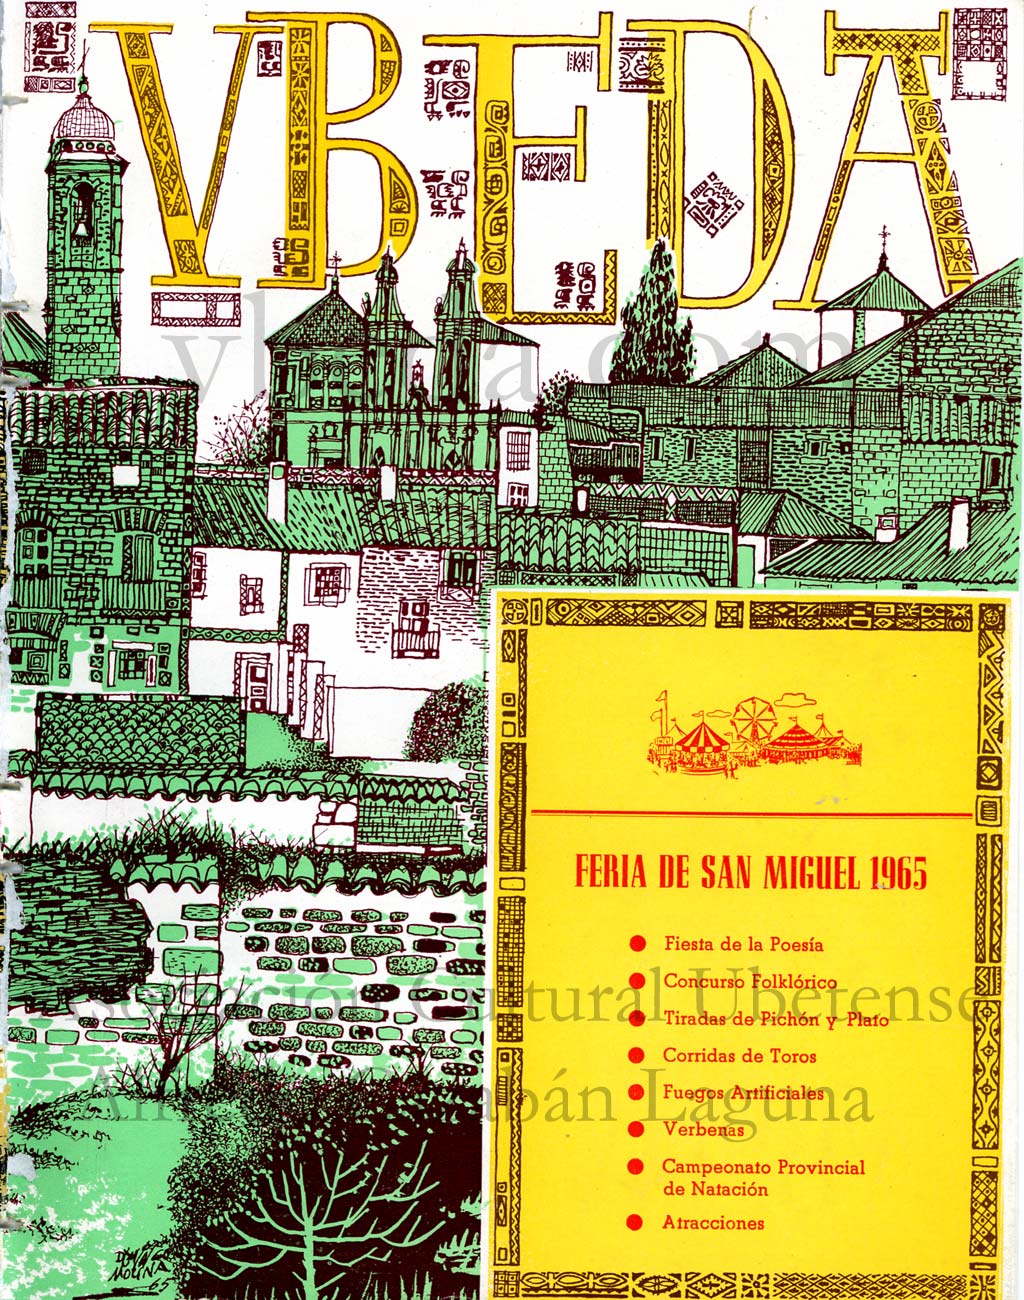 Revista Vbeda. AÃ±o 16. NÂº 136 de 25 de septiembre de 1965